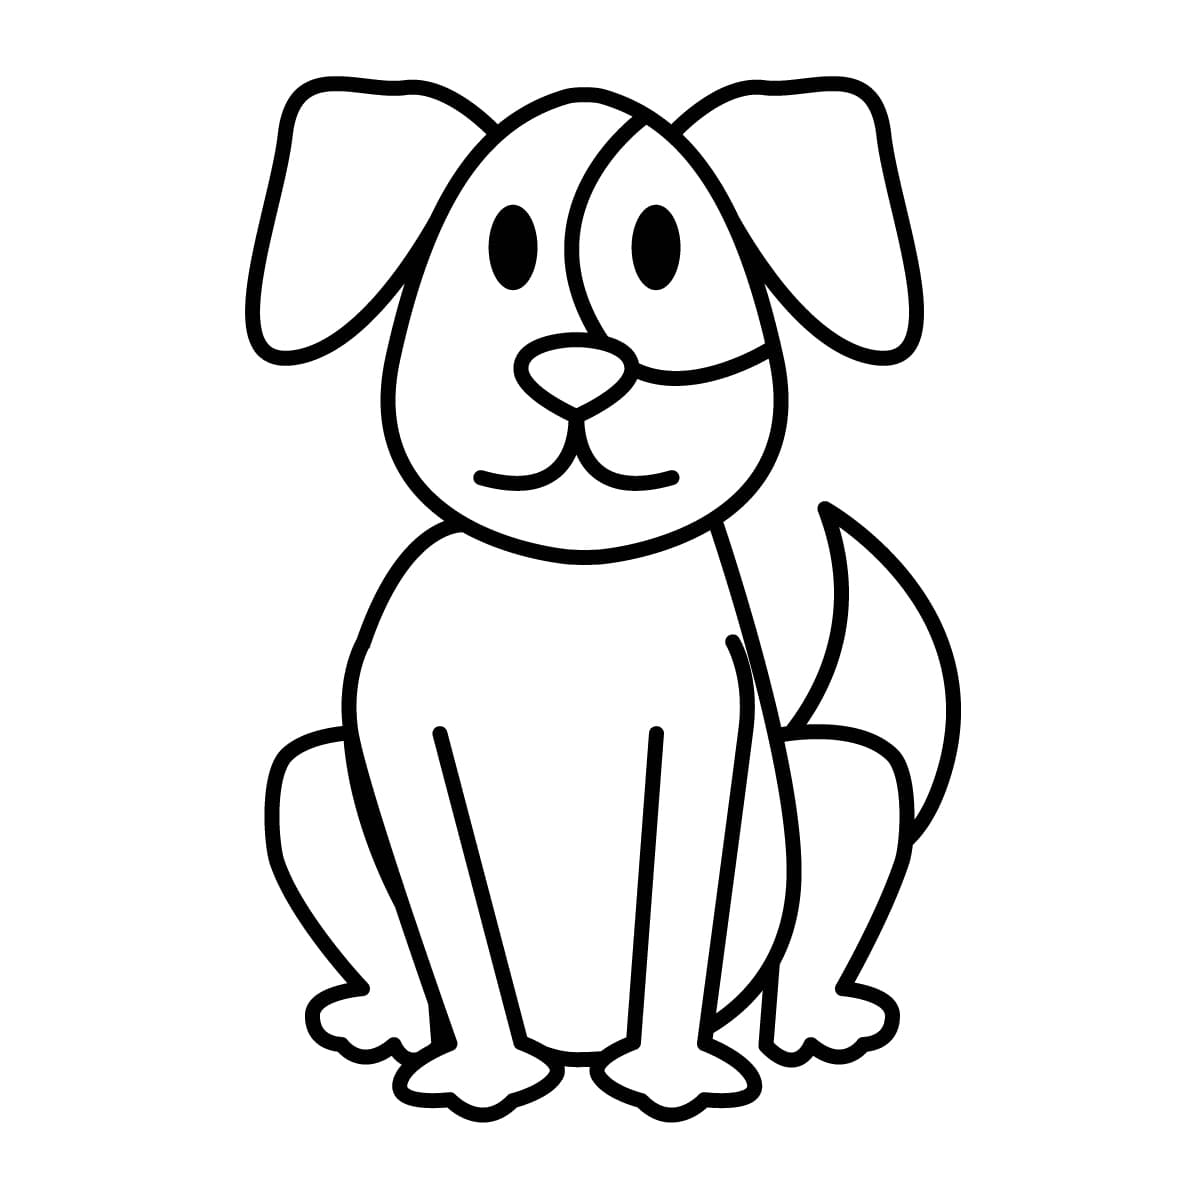 Dibujo de perro para colorear e imprimir - Dibujos y colores